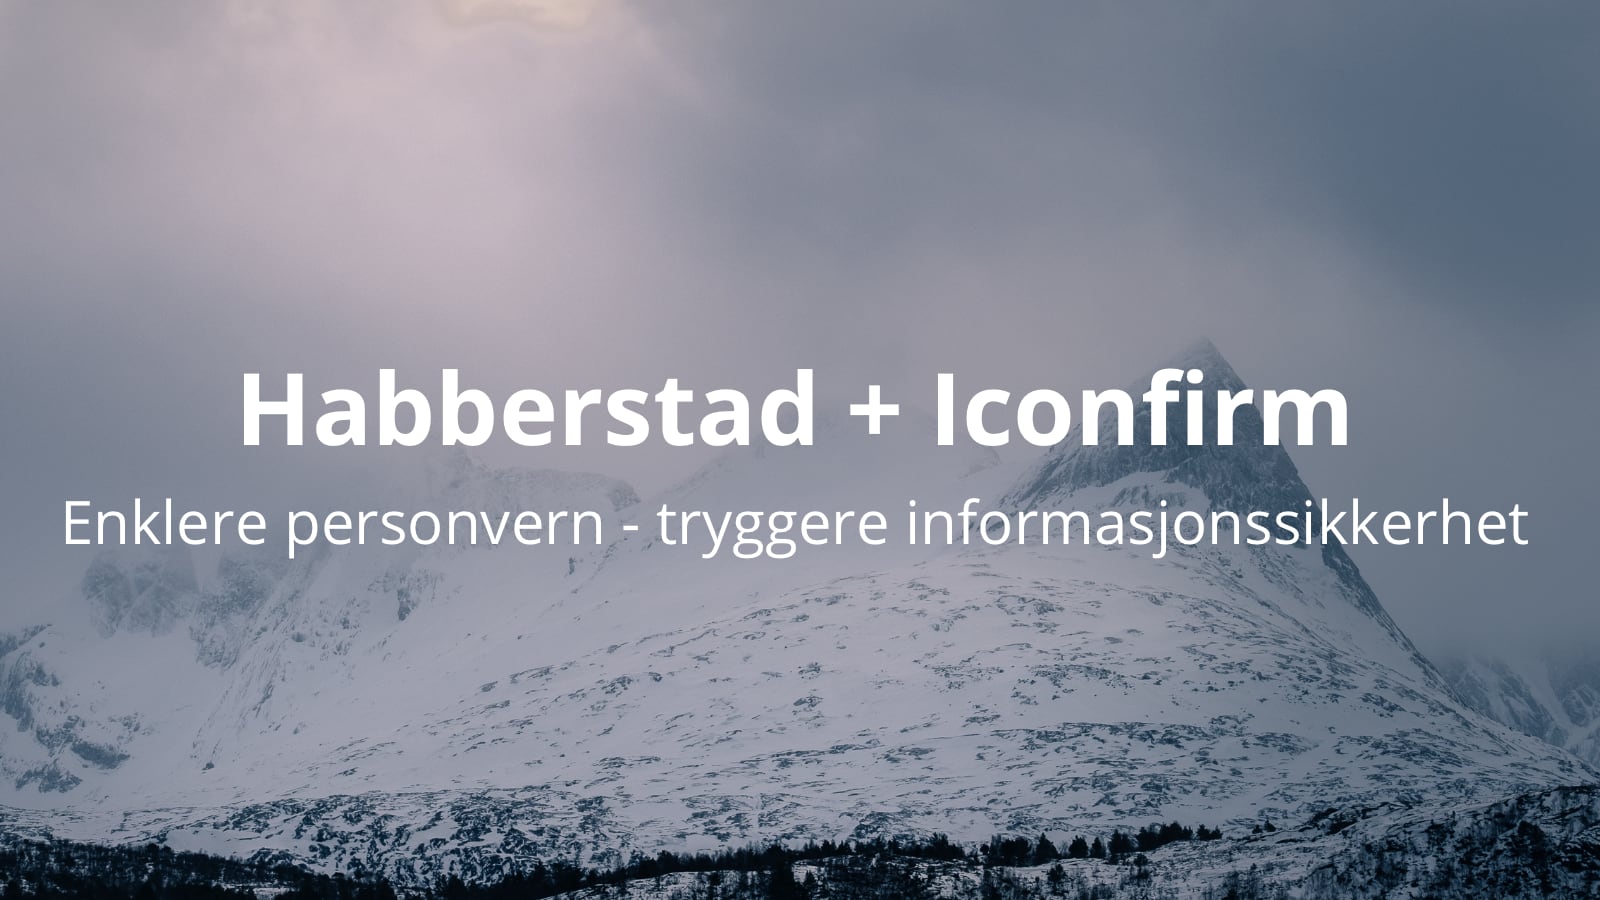 Habberstad og Iconfirm inngår samarbeid